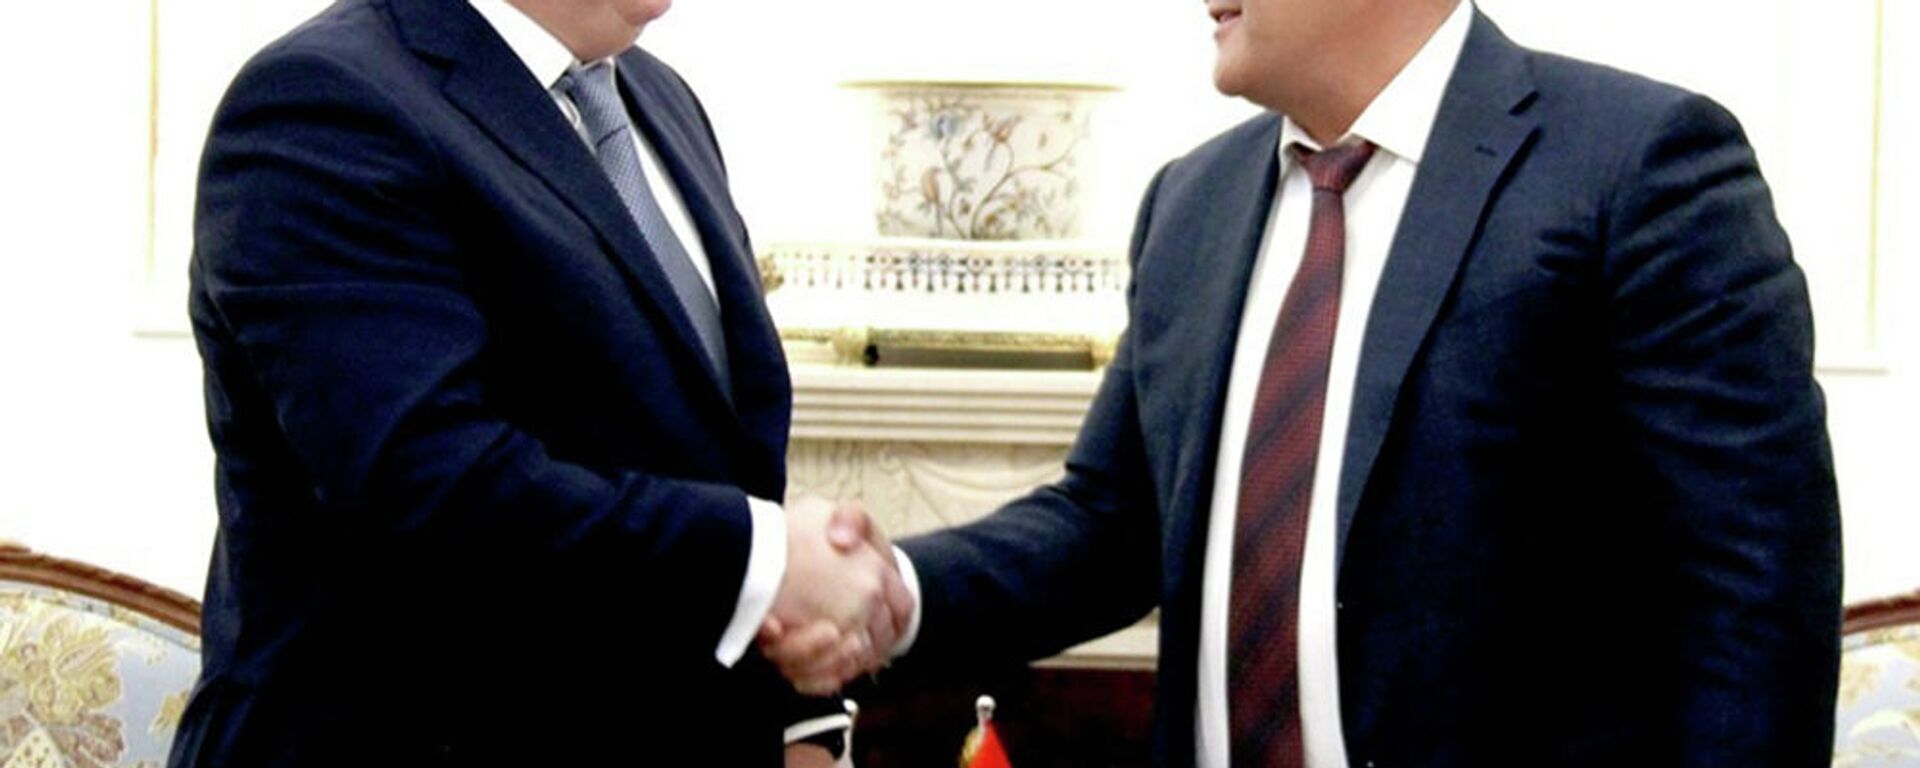 Встреча заместителя главы кабмина Камчыбека Ташиева и главы АО Рособоронэкспорт Александра Михеева - Sputnik Кыргызстан, 1920, 30.10.2021